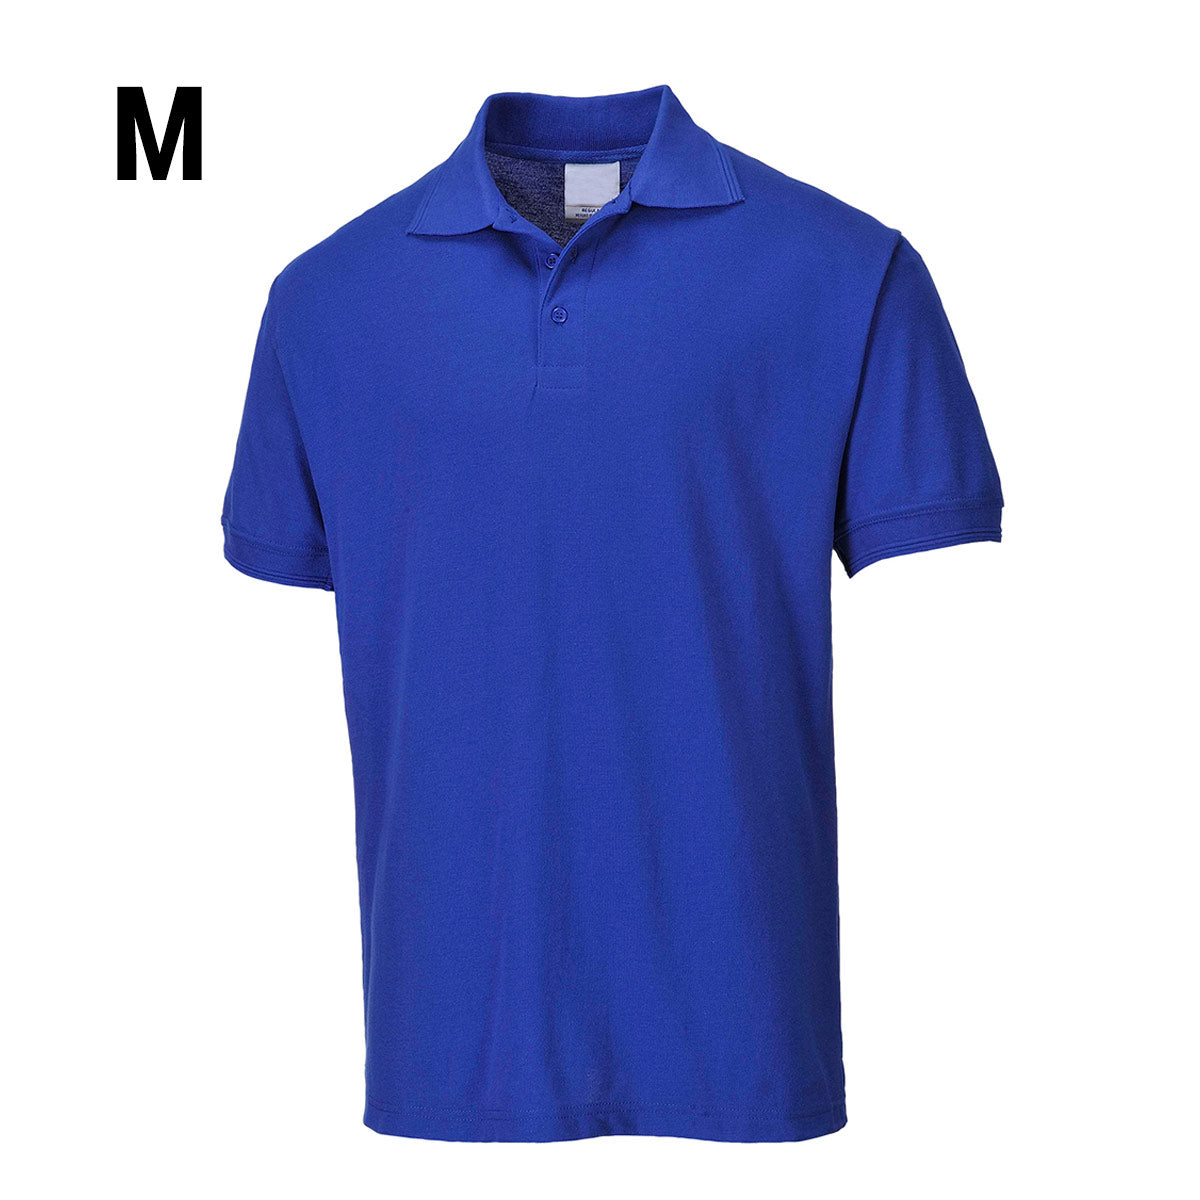 Poloskjorte for menn - kongeblå - størrelse: M